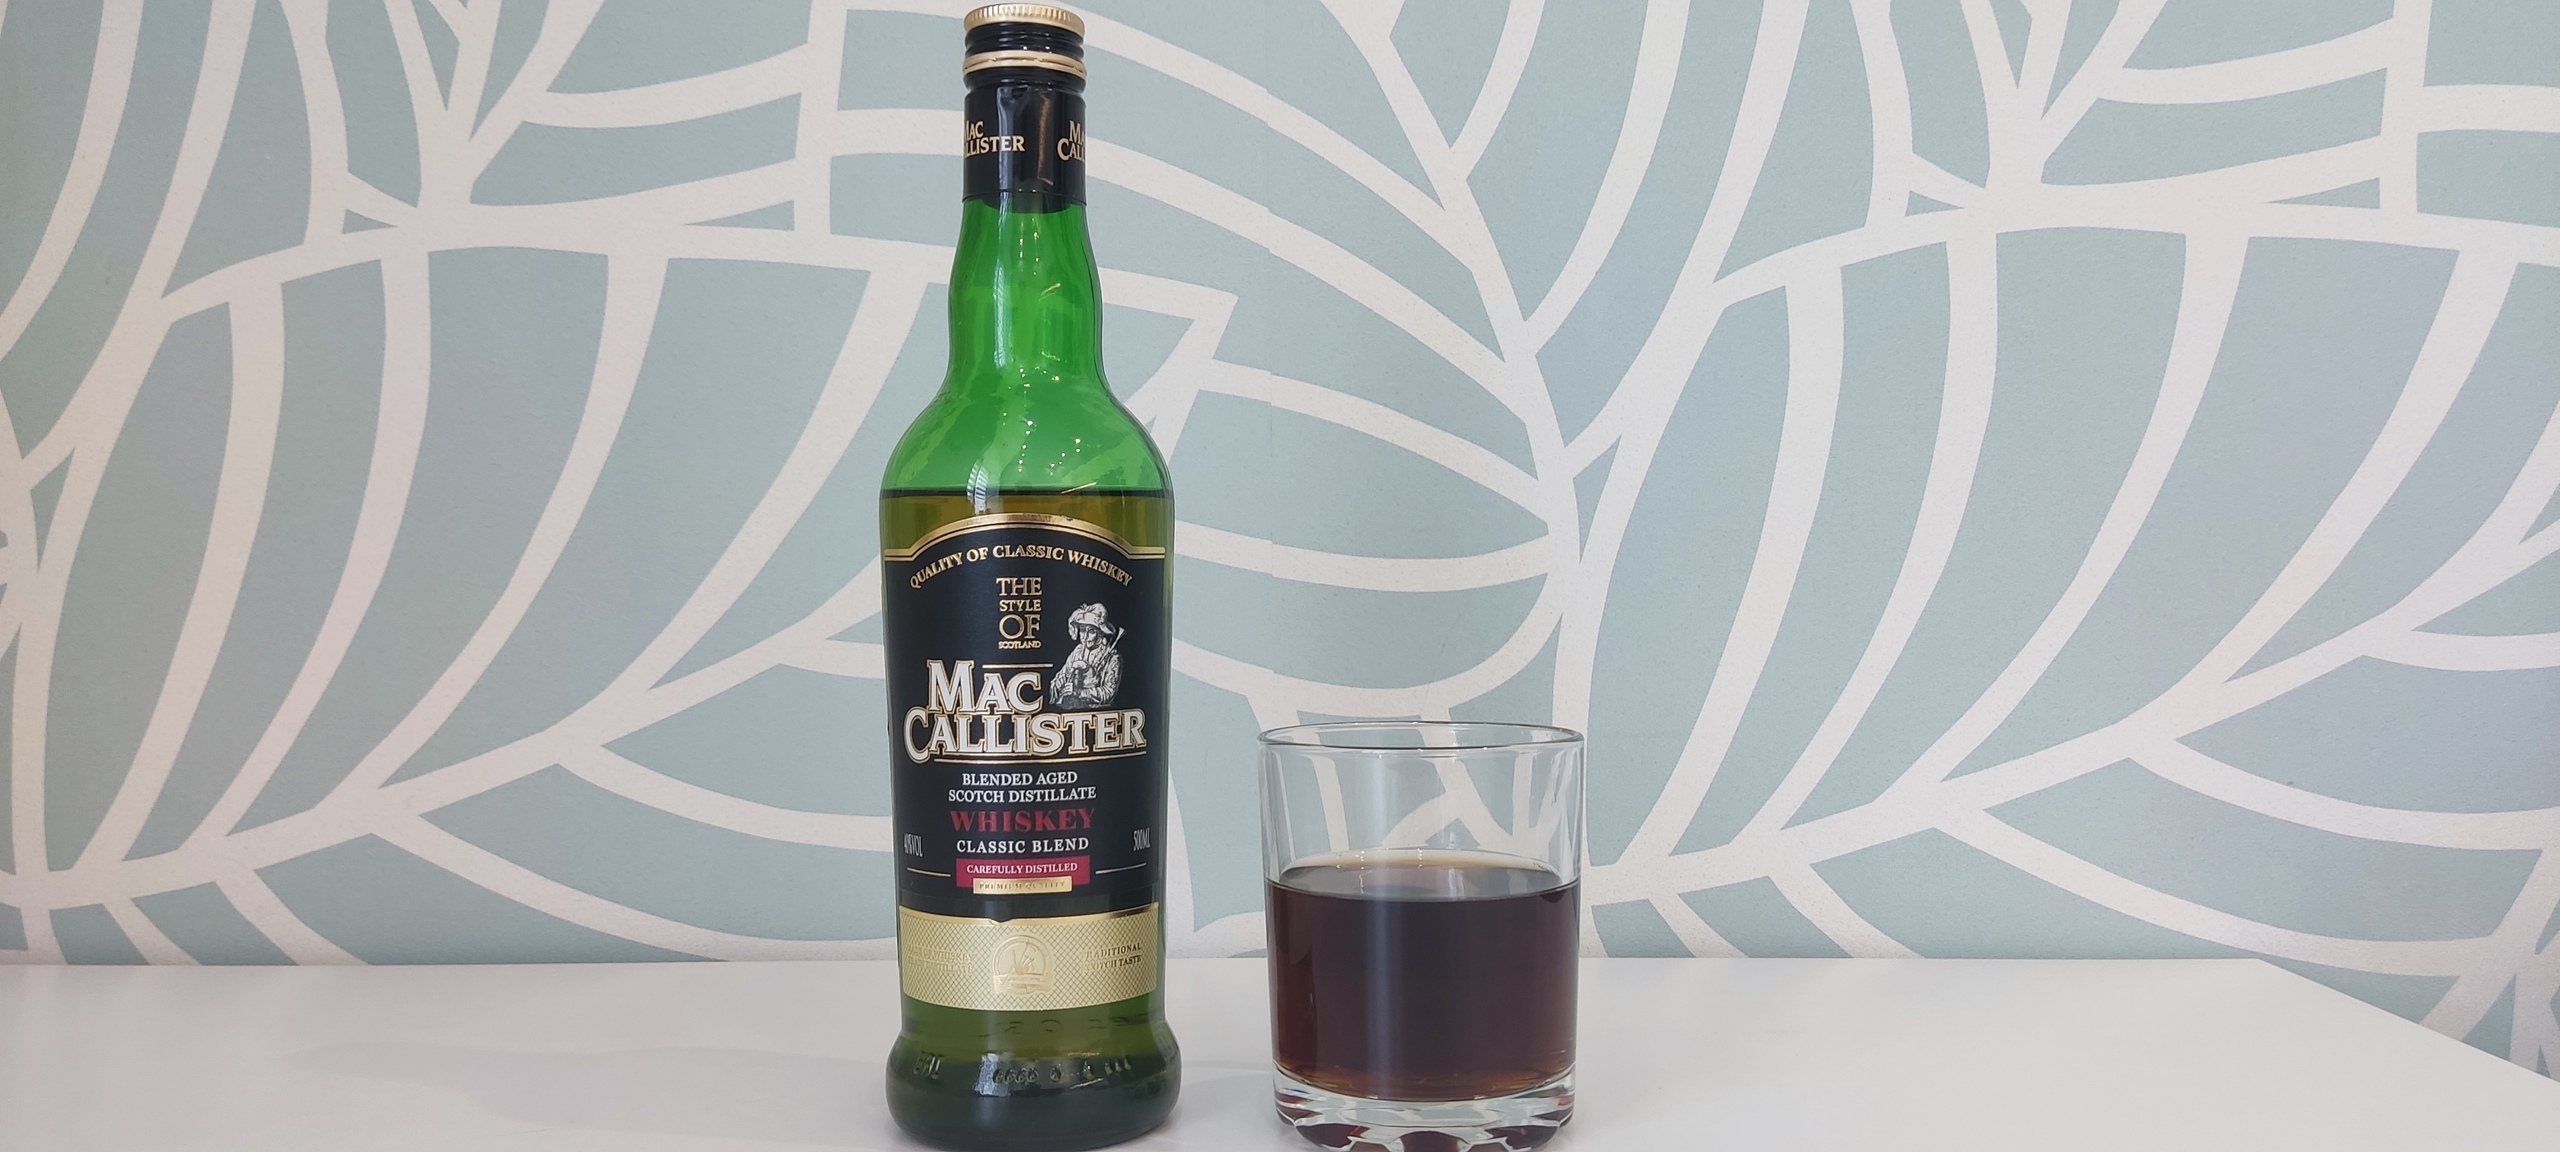 Би 2 пьют виски. Виски зерновой MACCALLISTER. Виски MACCALLISTER Classic Blend 0.5. Red Hackle виски. Виски зерновой Mac Callister.